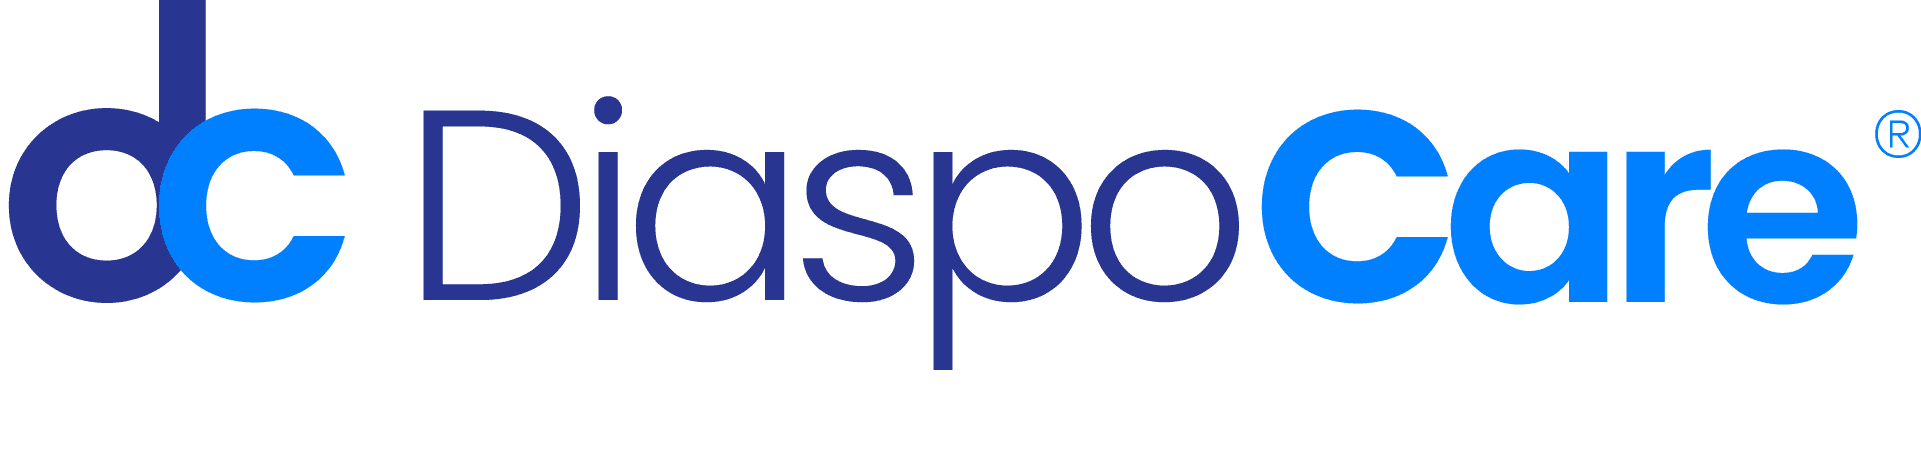 DiaspoCare Logo